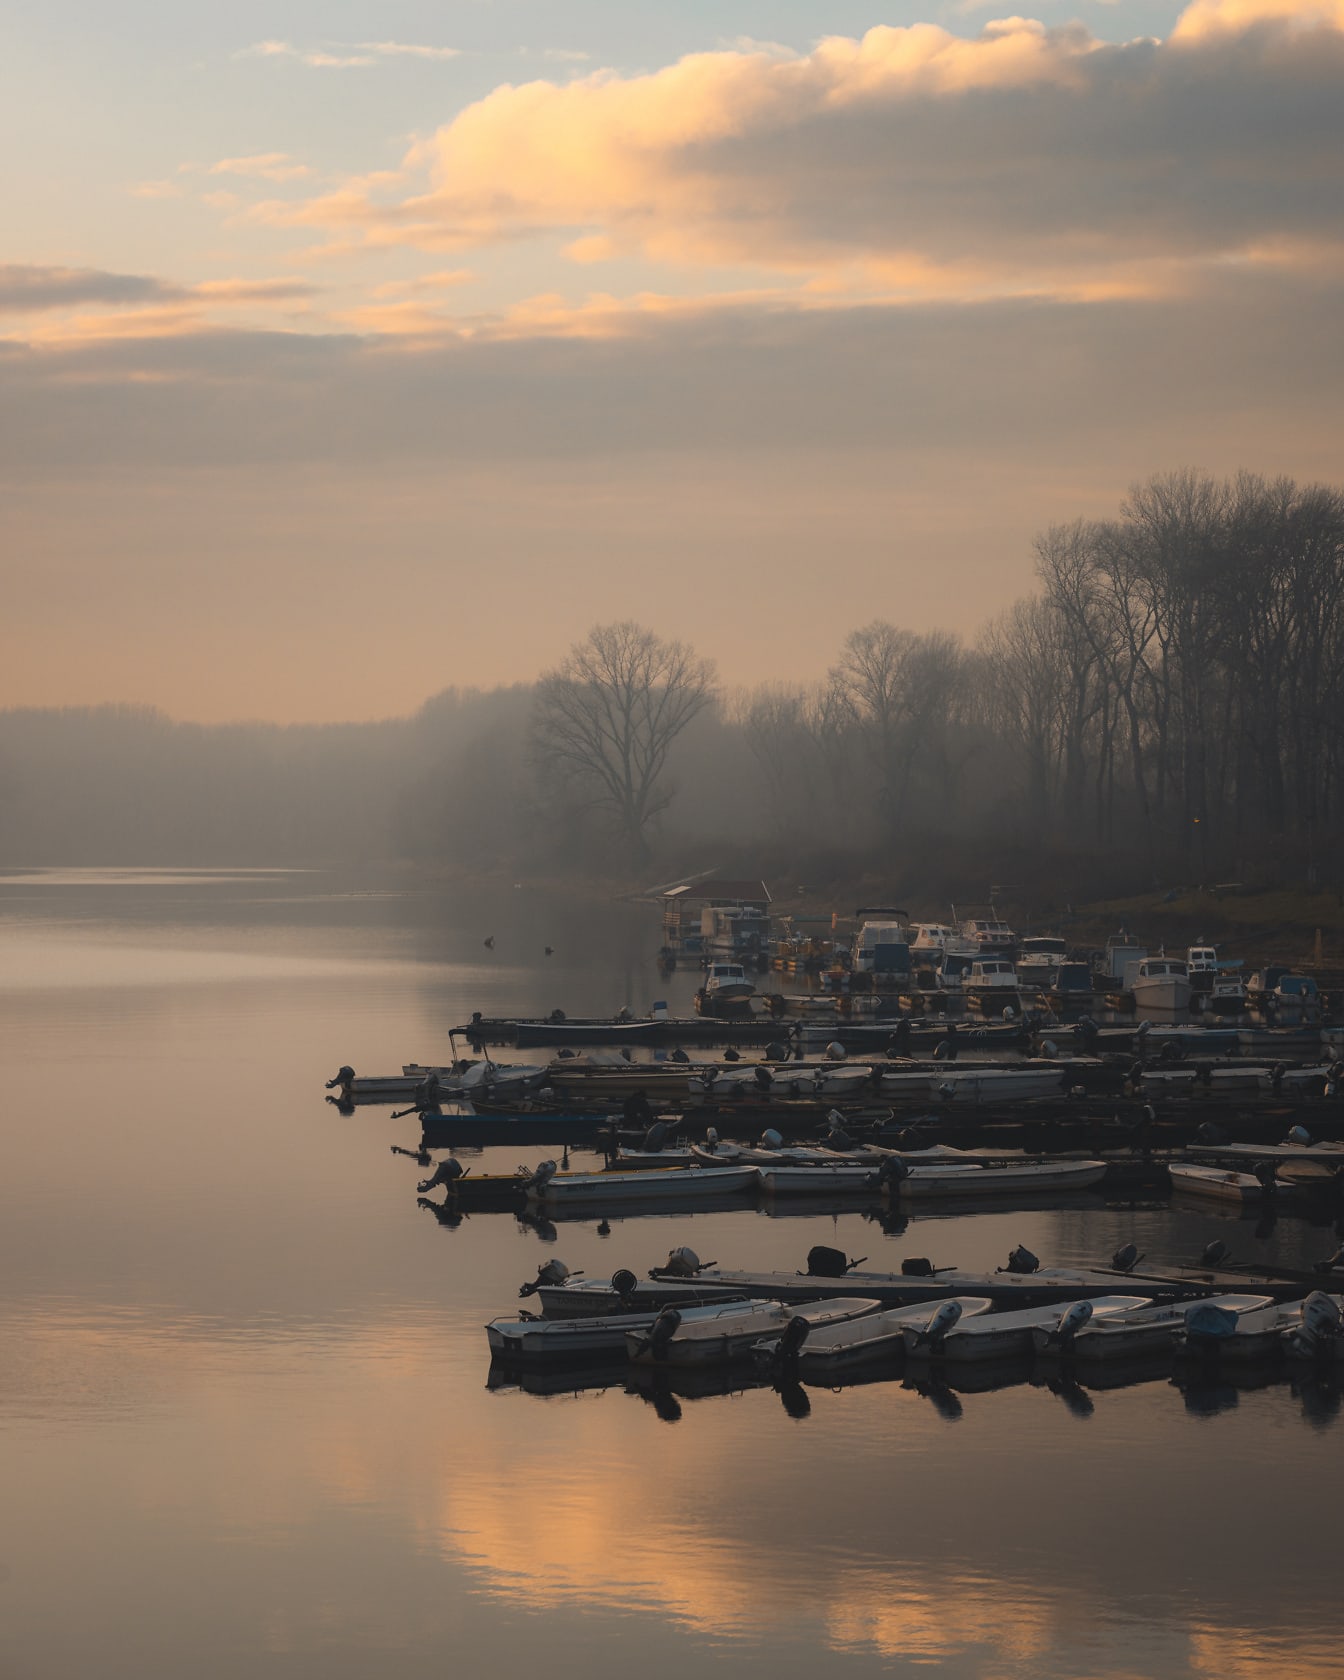 Величний туманний ранок на озерній гавані з рибальськими човнами